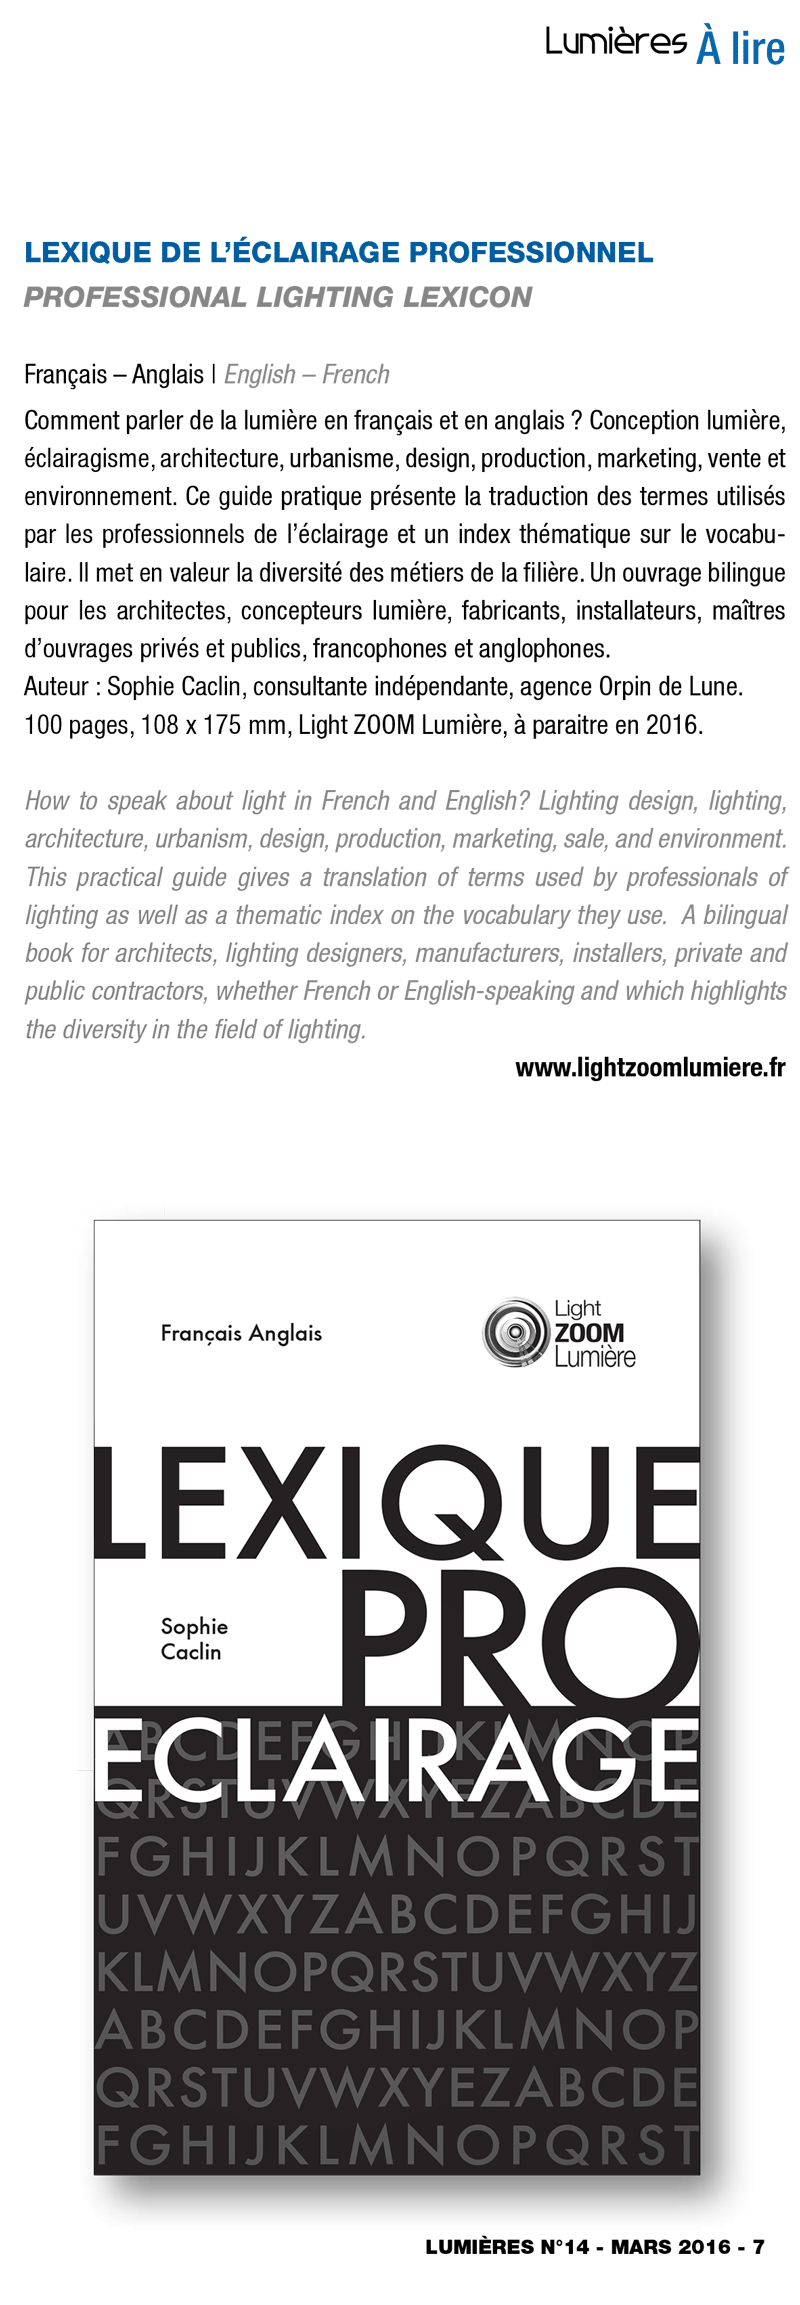 Lexique de l'éclairage-professionnel, de Sophie Caclin, A lire, Lumières, mars 2016, No 14 © Edition 3e Medias